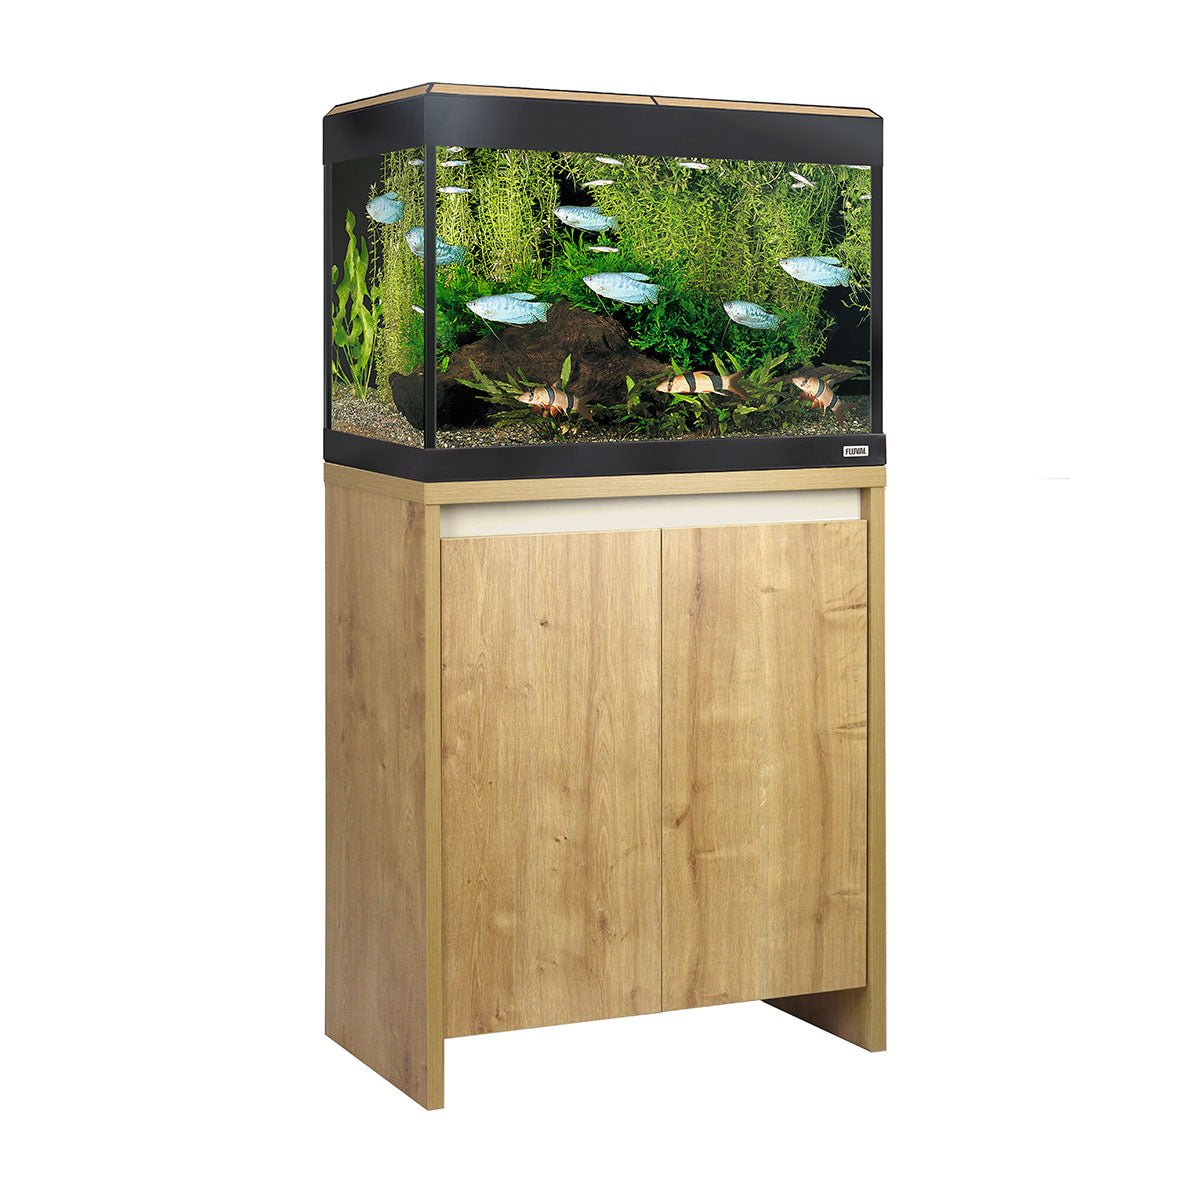 Fluval Roma Bluetooth LED 90 Aquarium and Cabinet - Oak - Charterhouse Aquatics